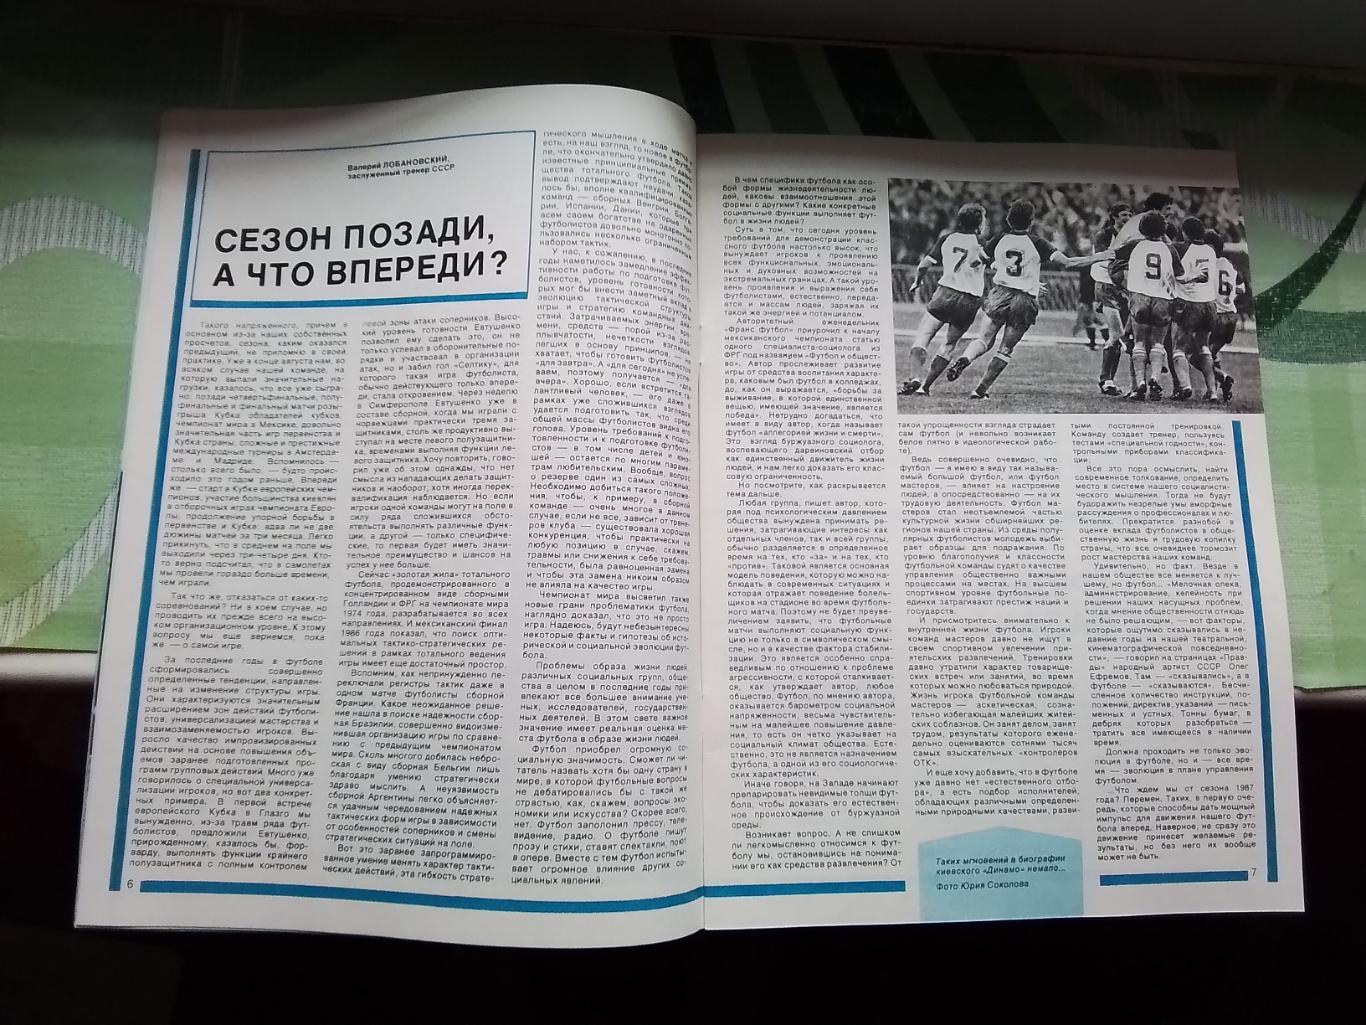 Журнал Спортивные игры 1987 1 Влад Высоцкий Франция на ЧМ-86 ВВА чемпион регби 6